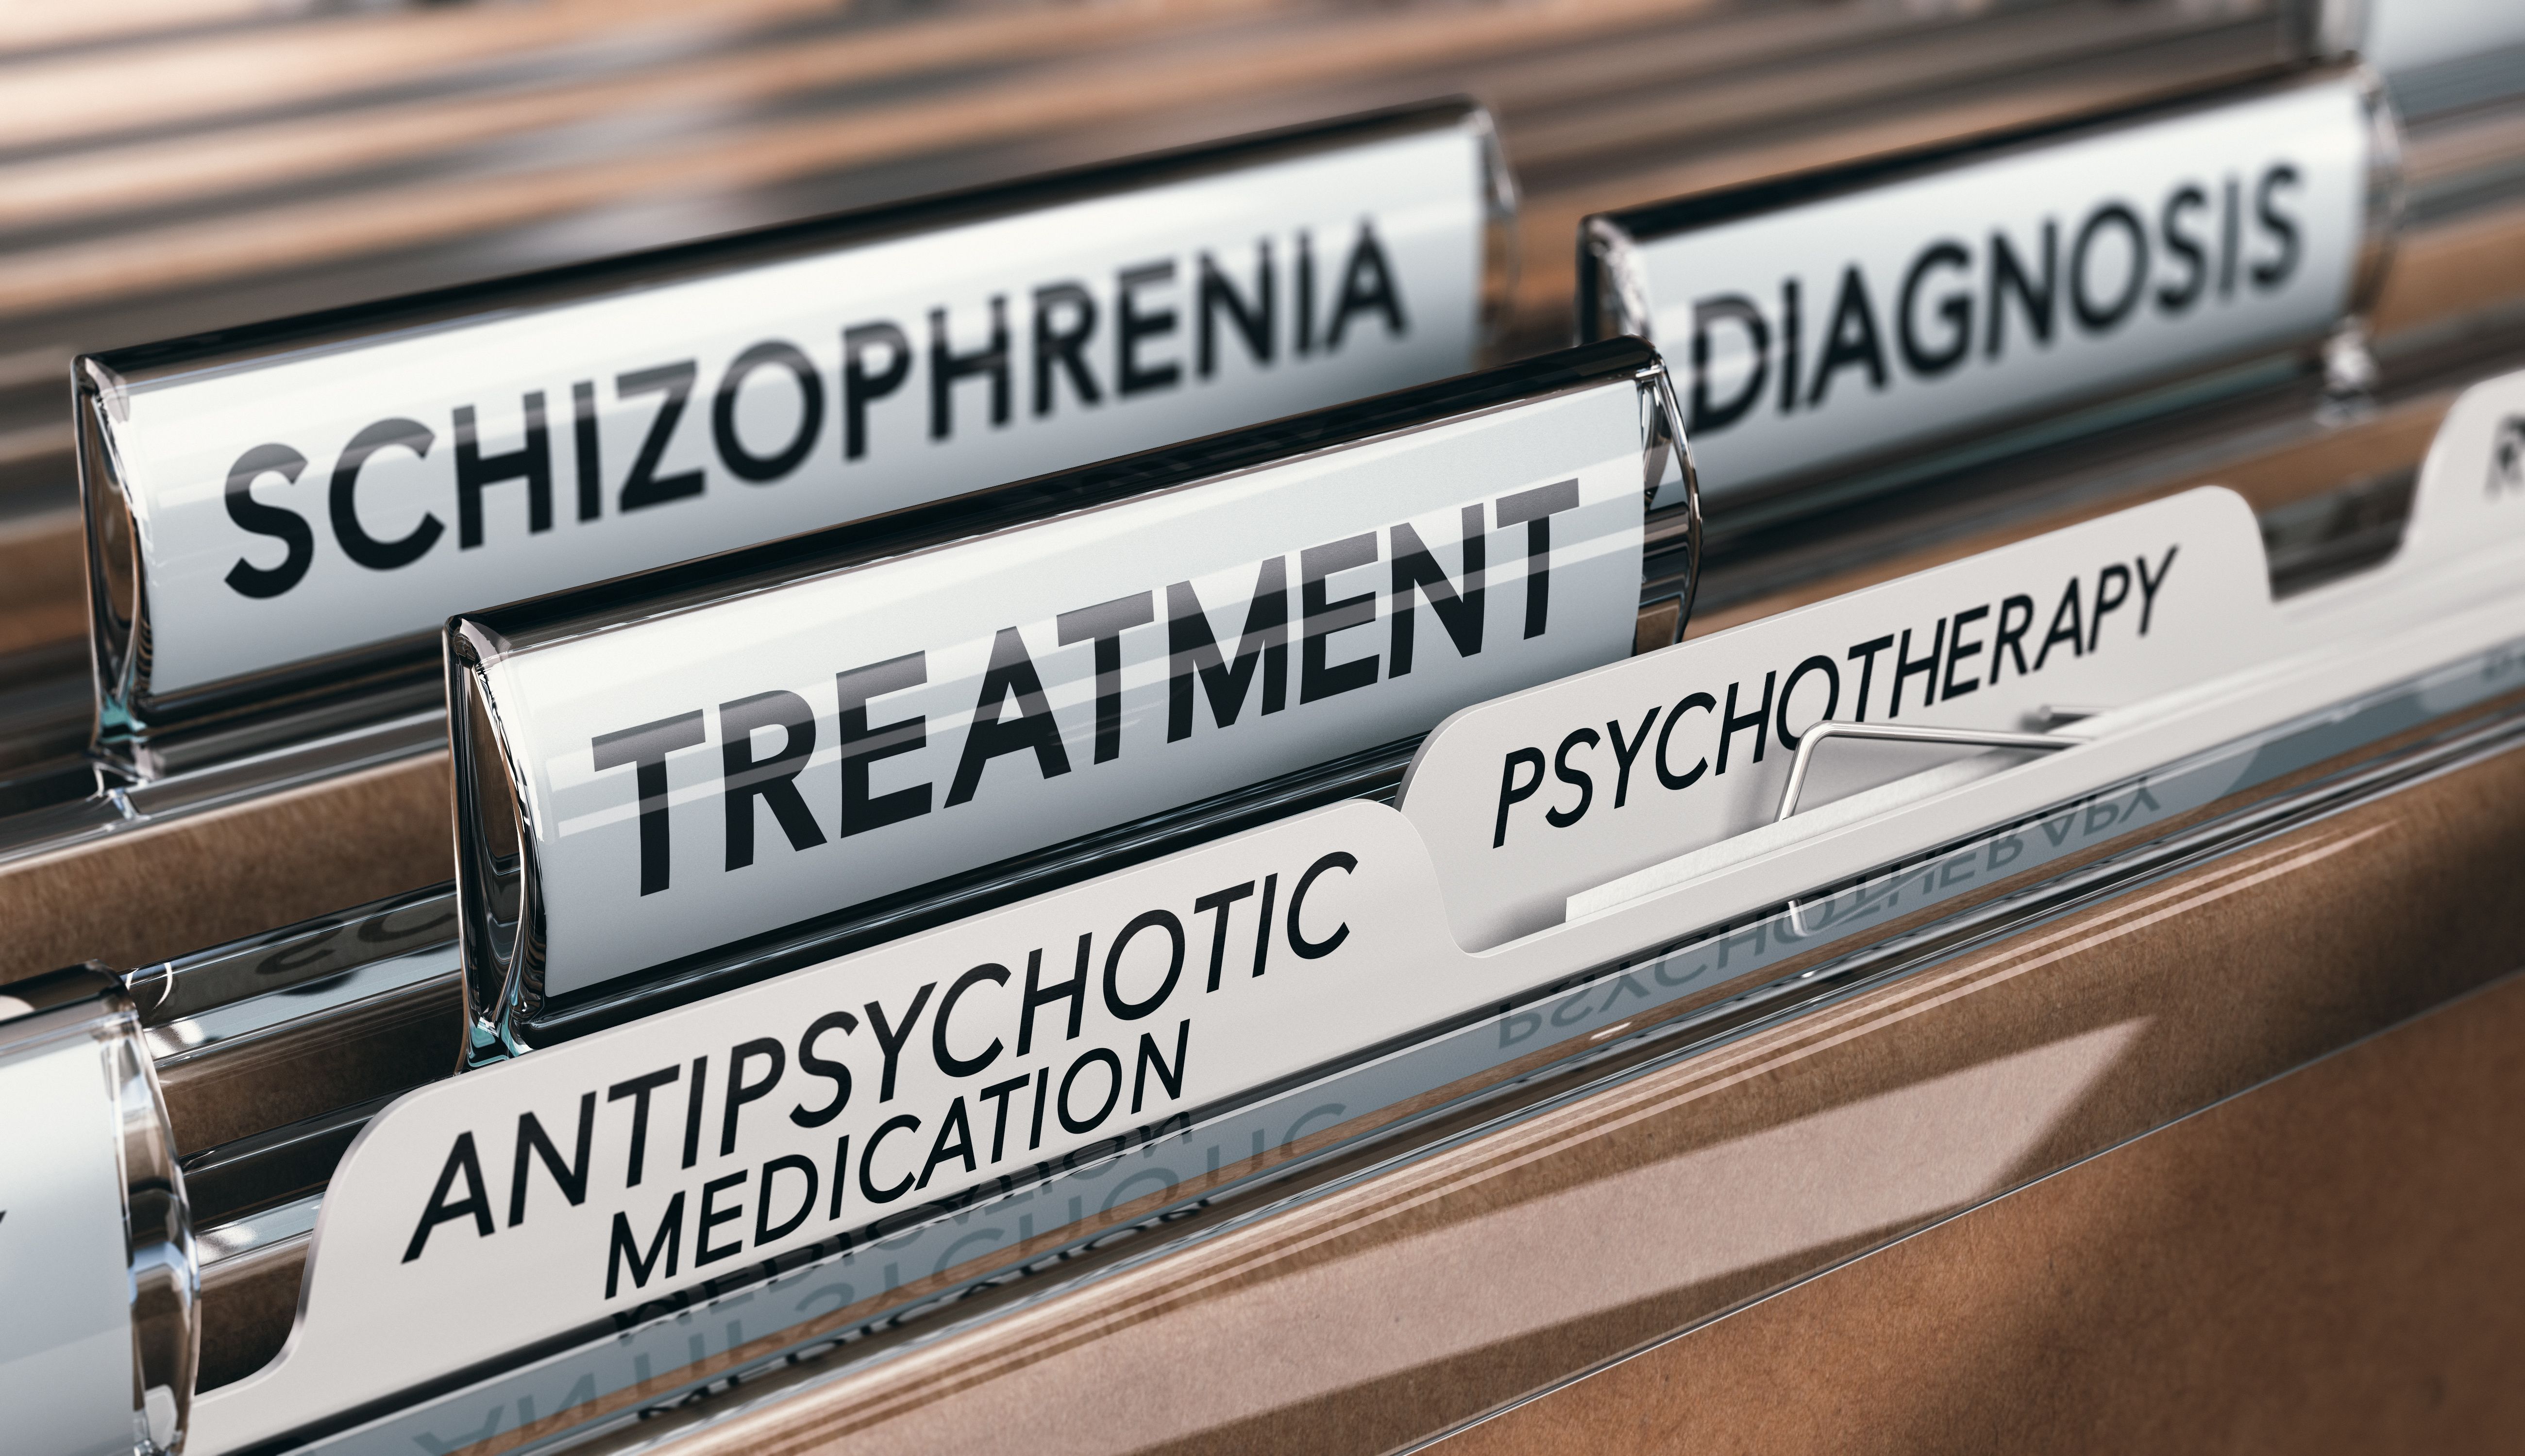 FDA to Evaluate Novel Treatment for Schizophrenia